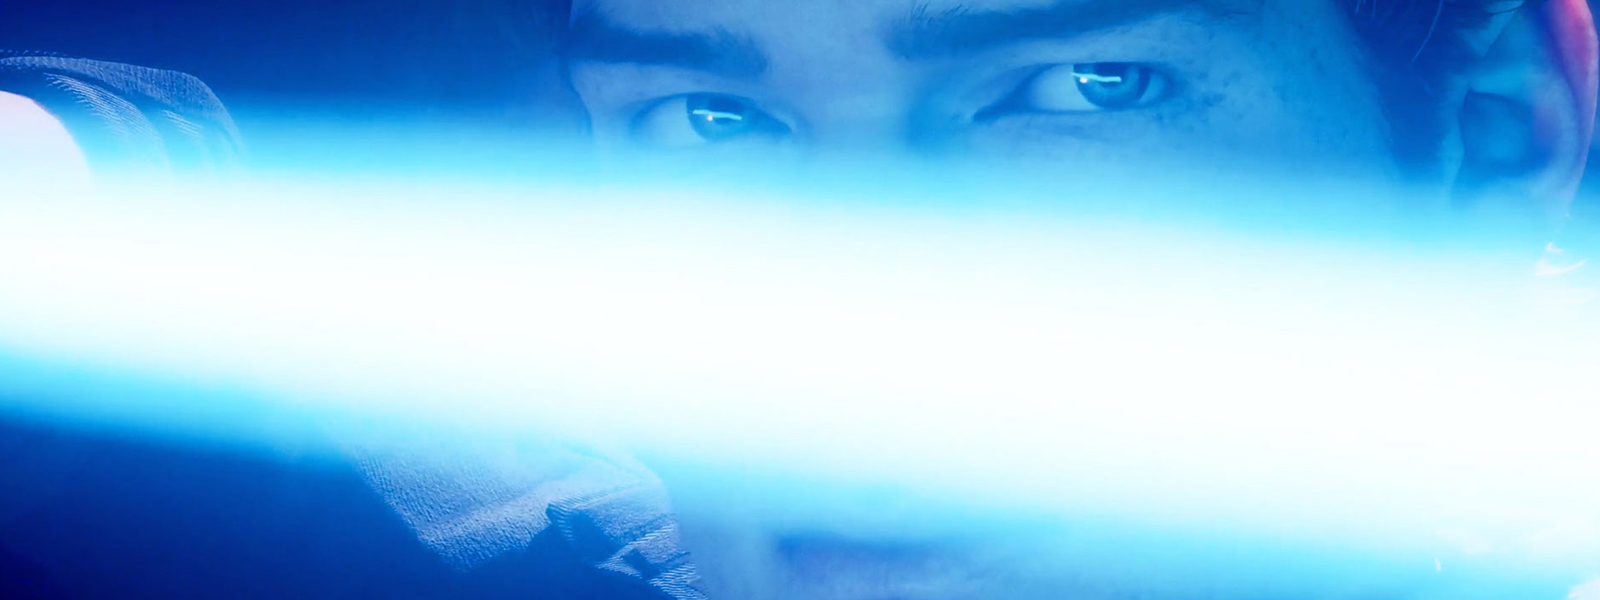 Κοντινή όψη του Καλ Κέστις που κρατάει φωτόσπαθο μπροστά από το πρόσωπό του